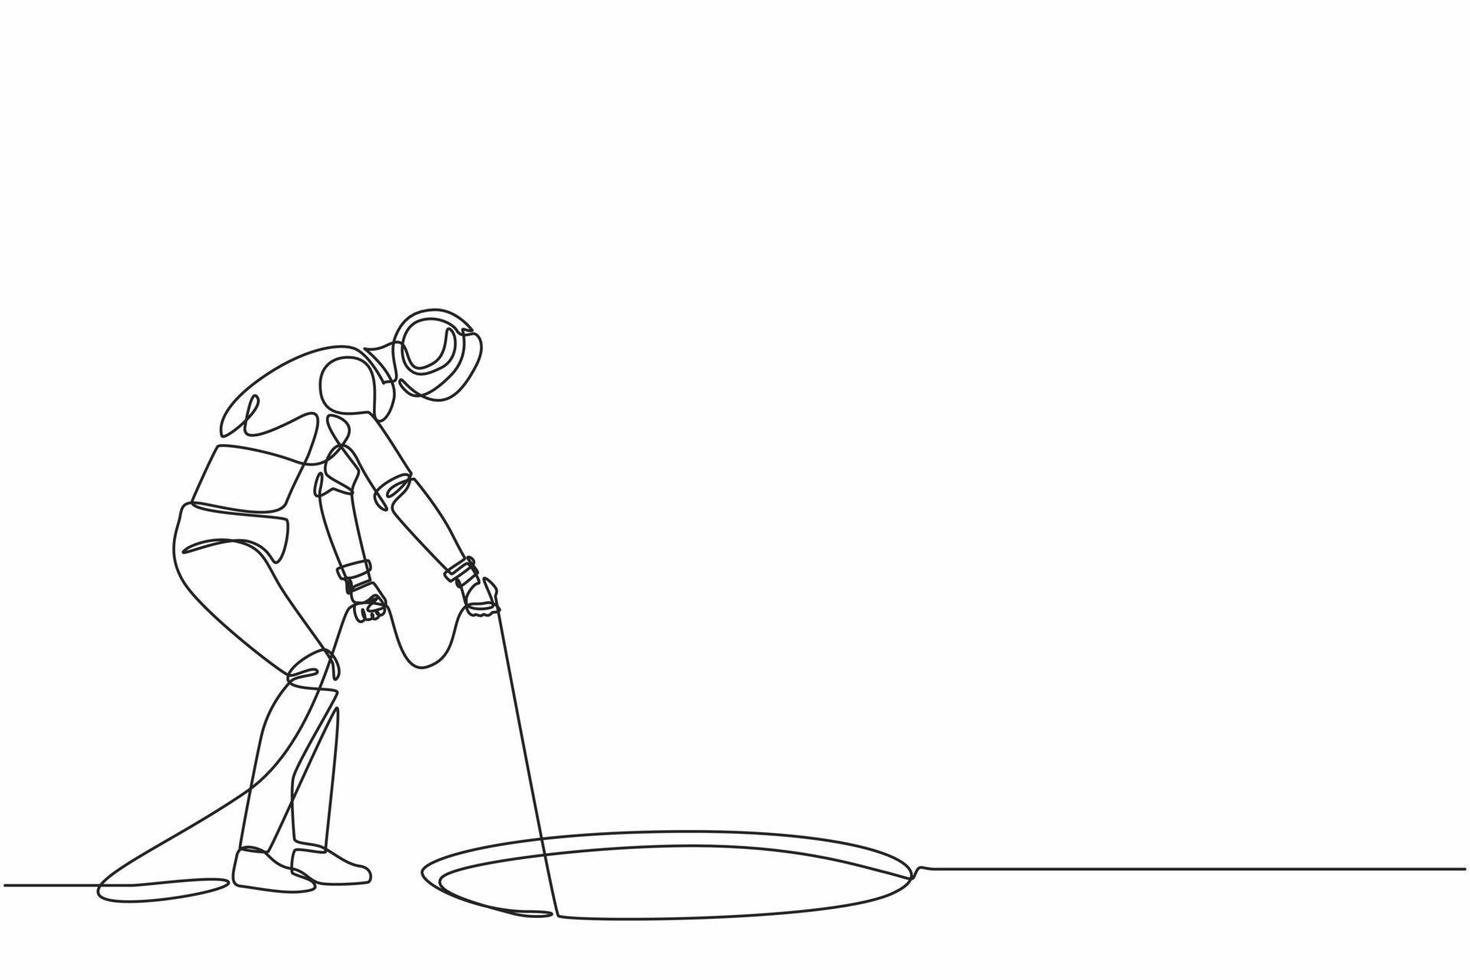 um robô de desenho de linha contínuo estica a corda no buraco. perguntando, olhando para o buraco. organismo cibernético robô humanóide. futuro desenvolvimento robótico. ilustração vetorial de desenho de linha única vetor